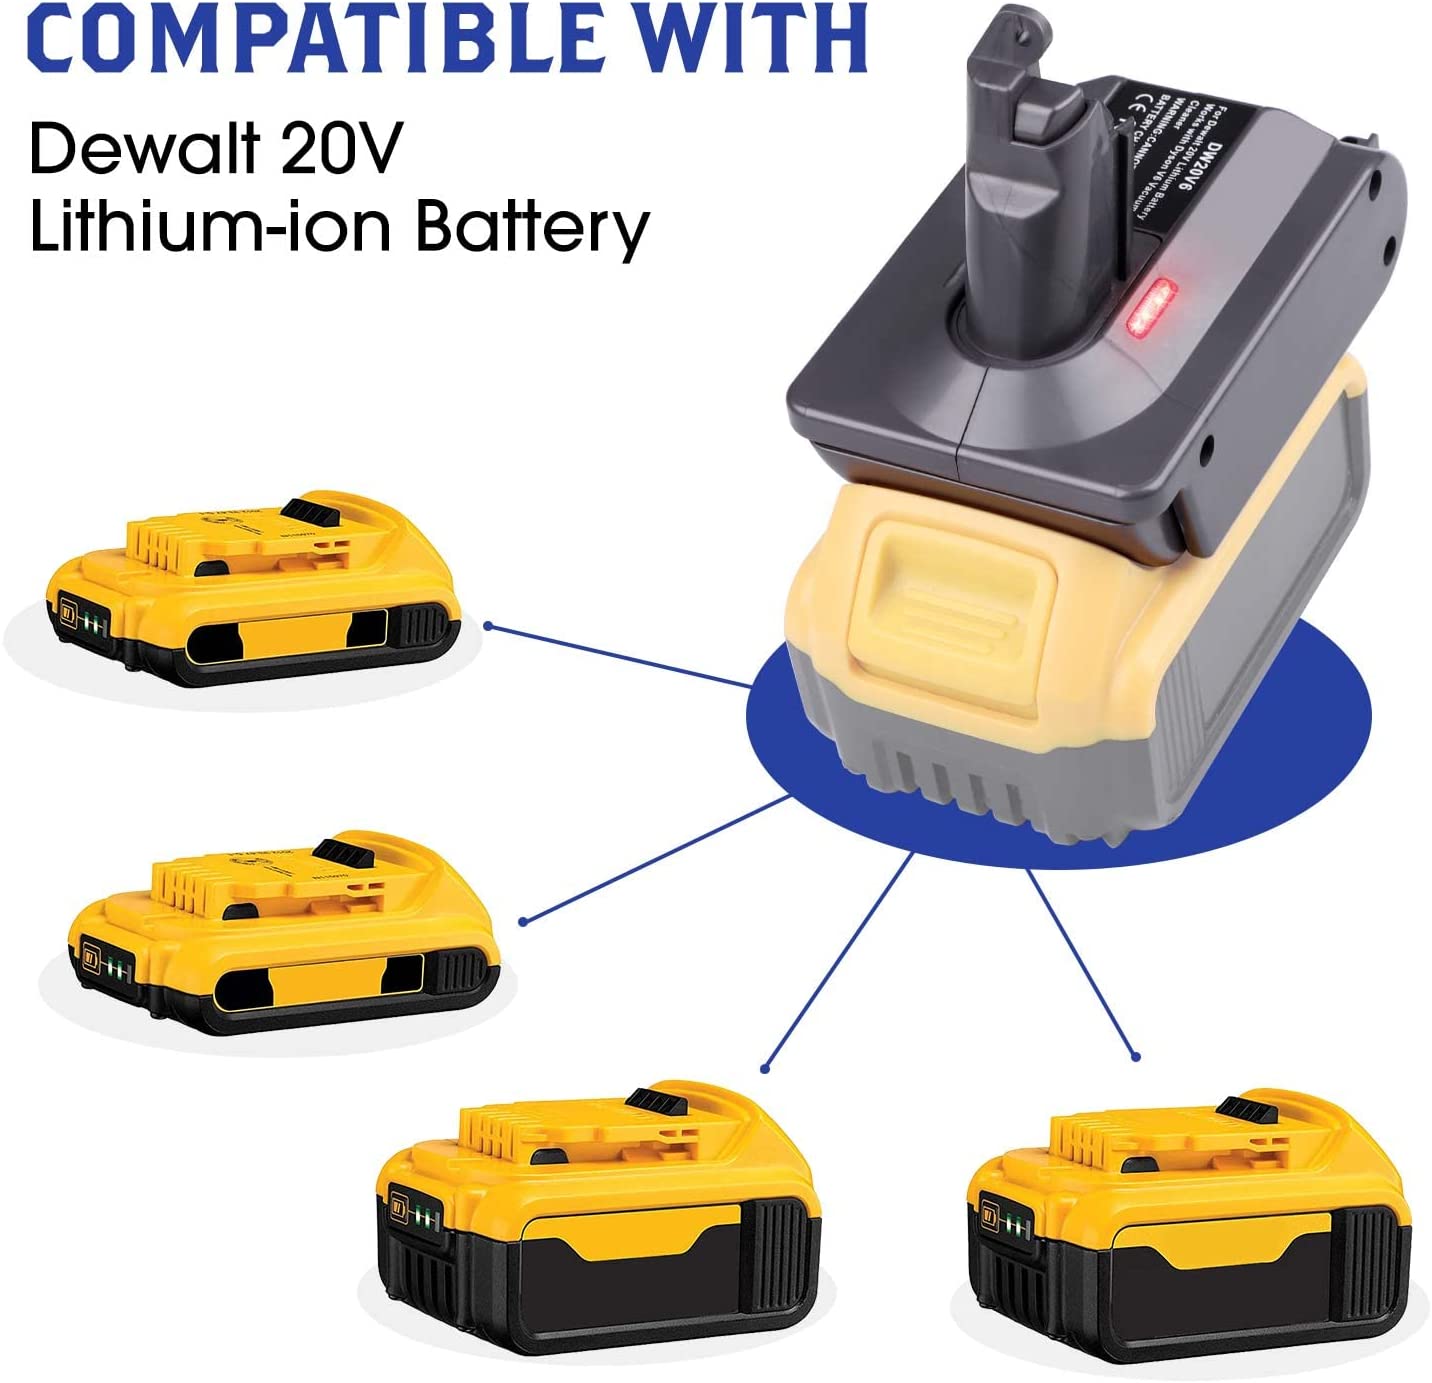 Dyson batteriadapter for Dewalt 20V litiumbatteri konvertert til Dyson V7-batteri